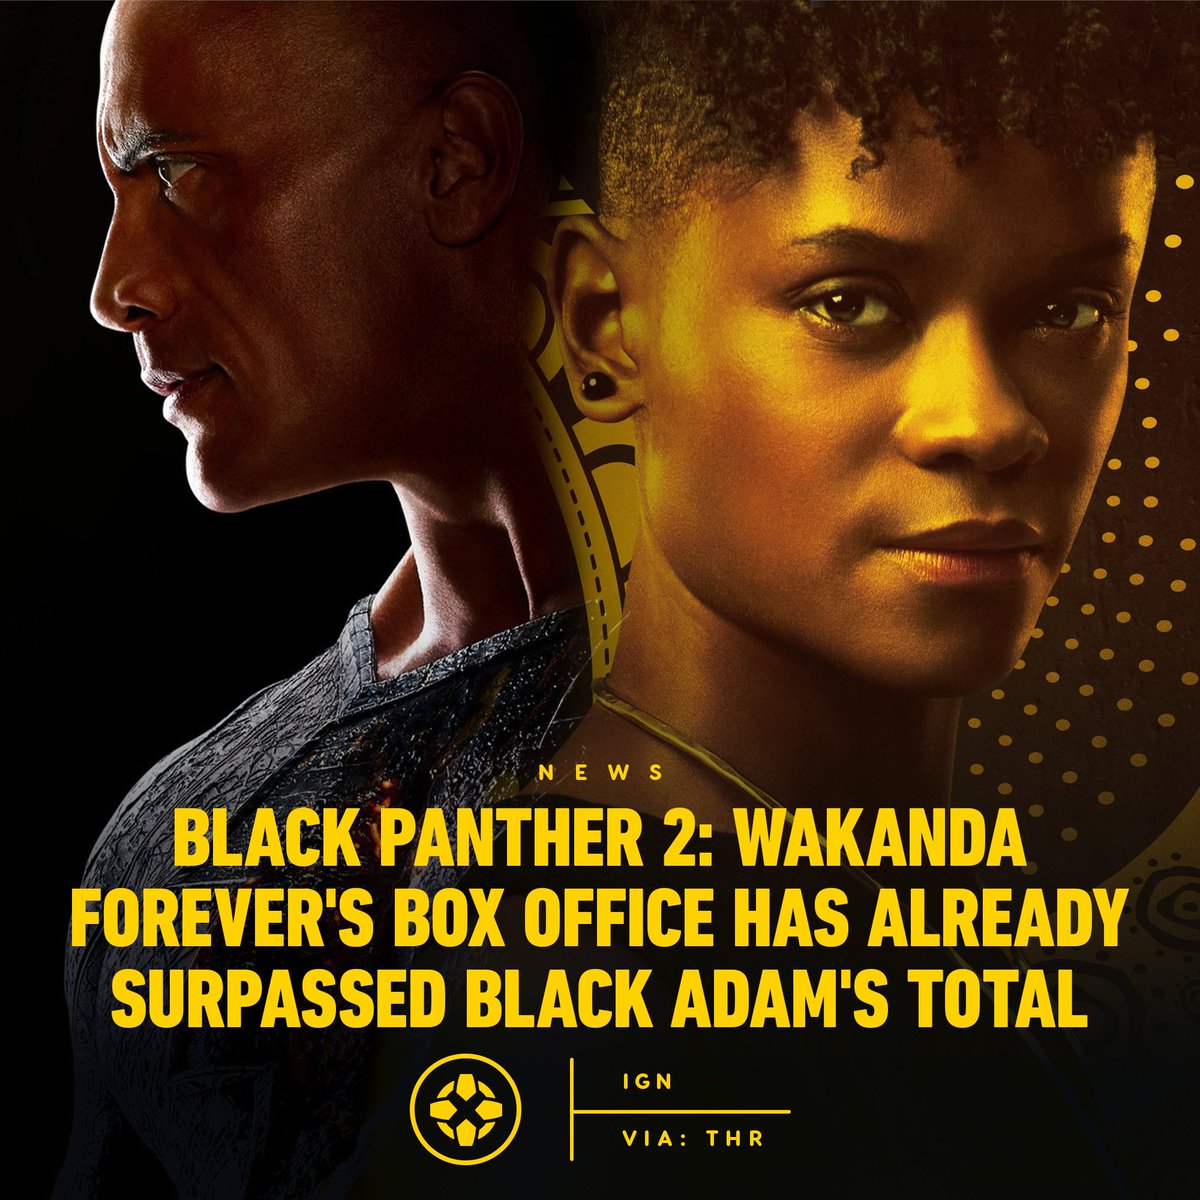 リチャー・ド・スミス on Twitter: "RT @IGN: Black Panther: Wakanda Forever has